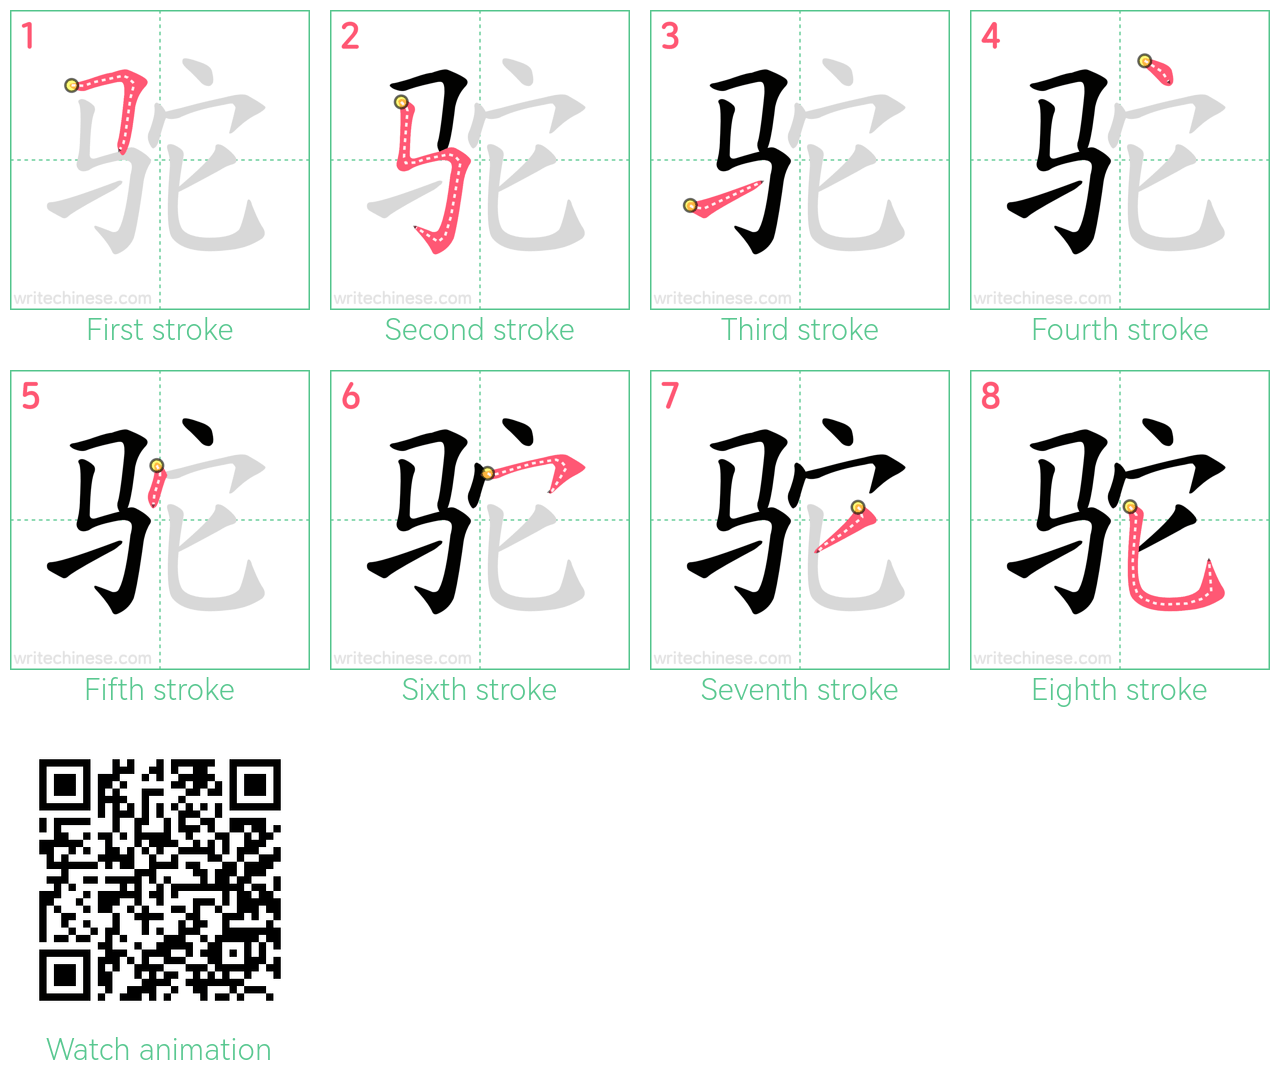 驼 step-by-step stroke order diagrams